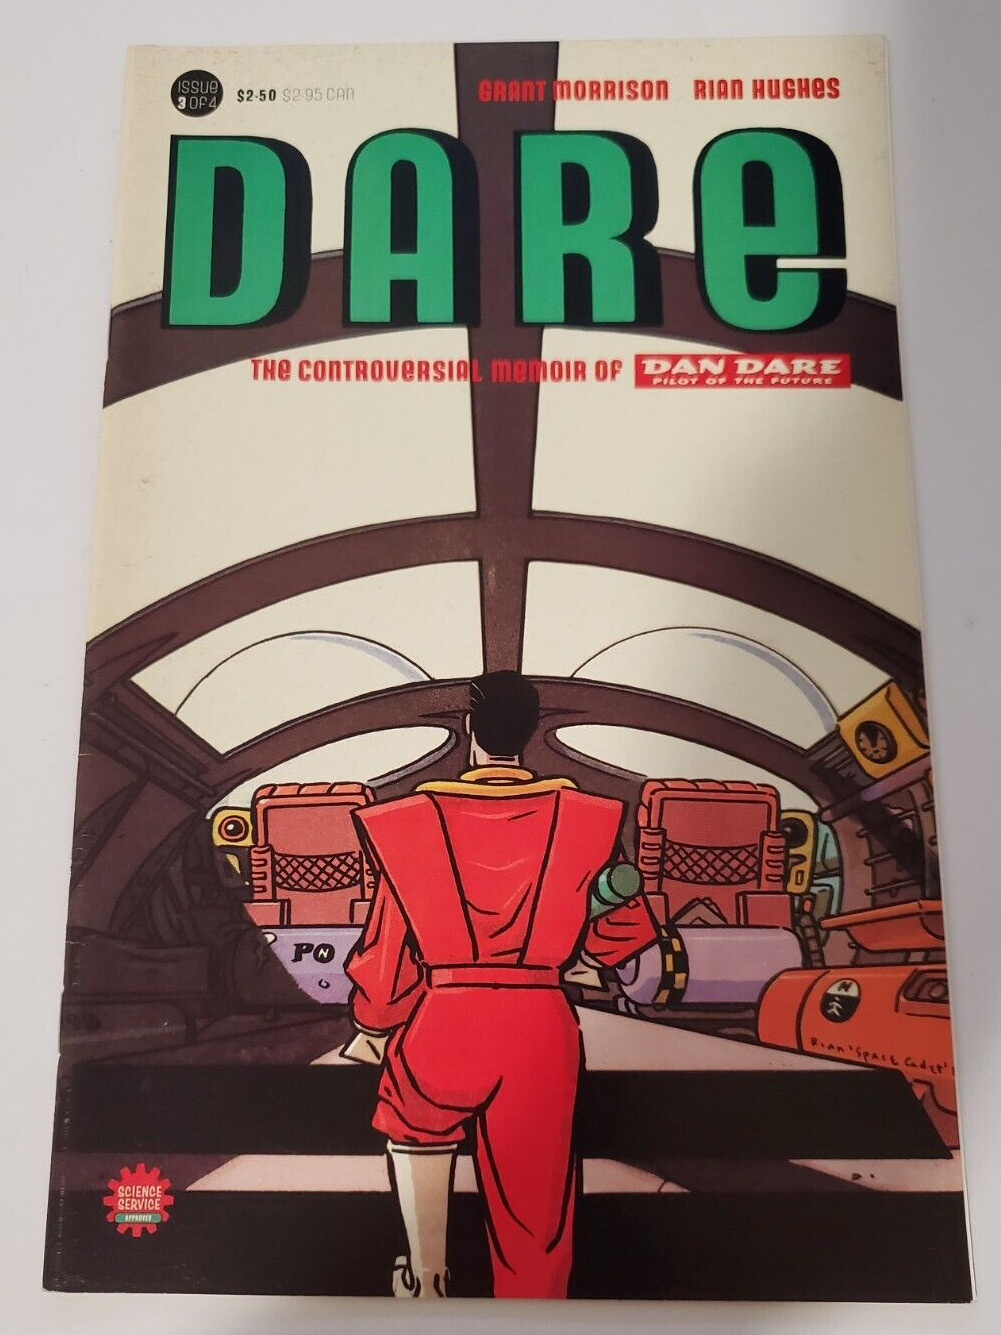 Dare #3 By Grant Morrison Rian Hughes Dan Dare Pilot Of The Future Monster 1992